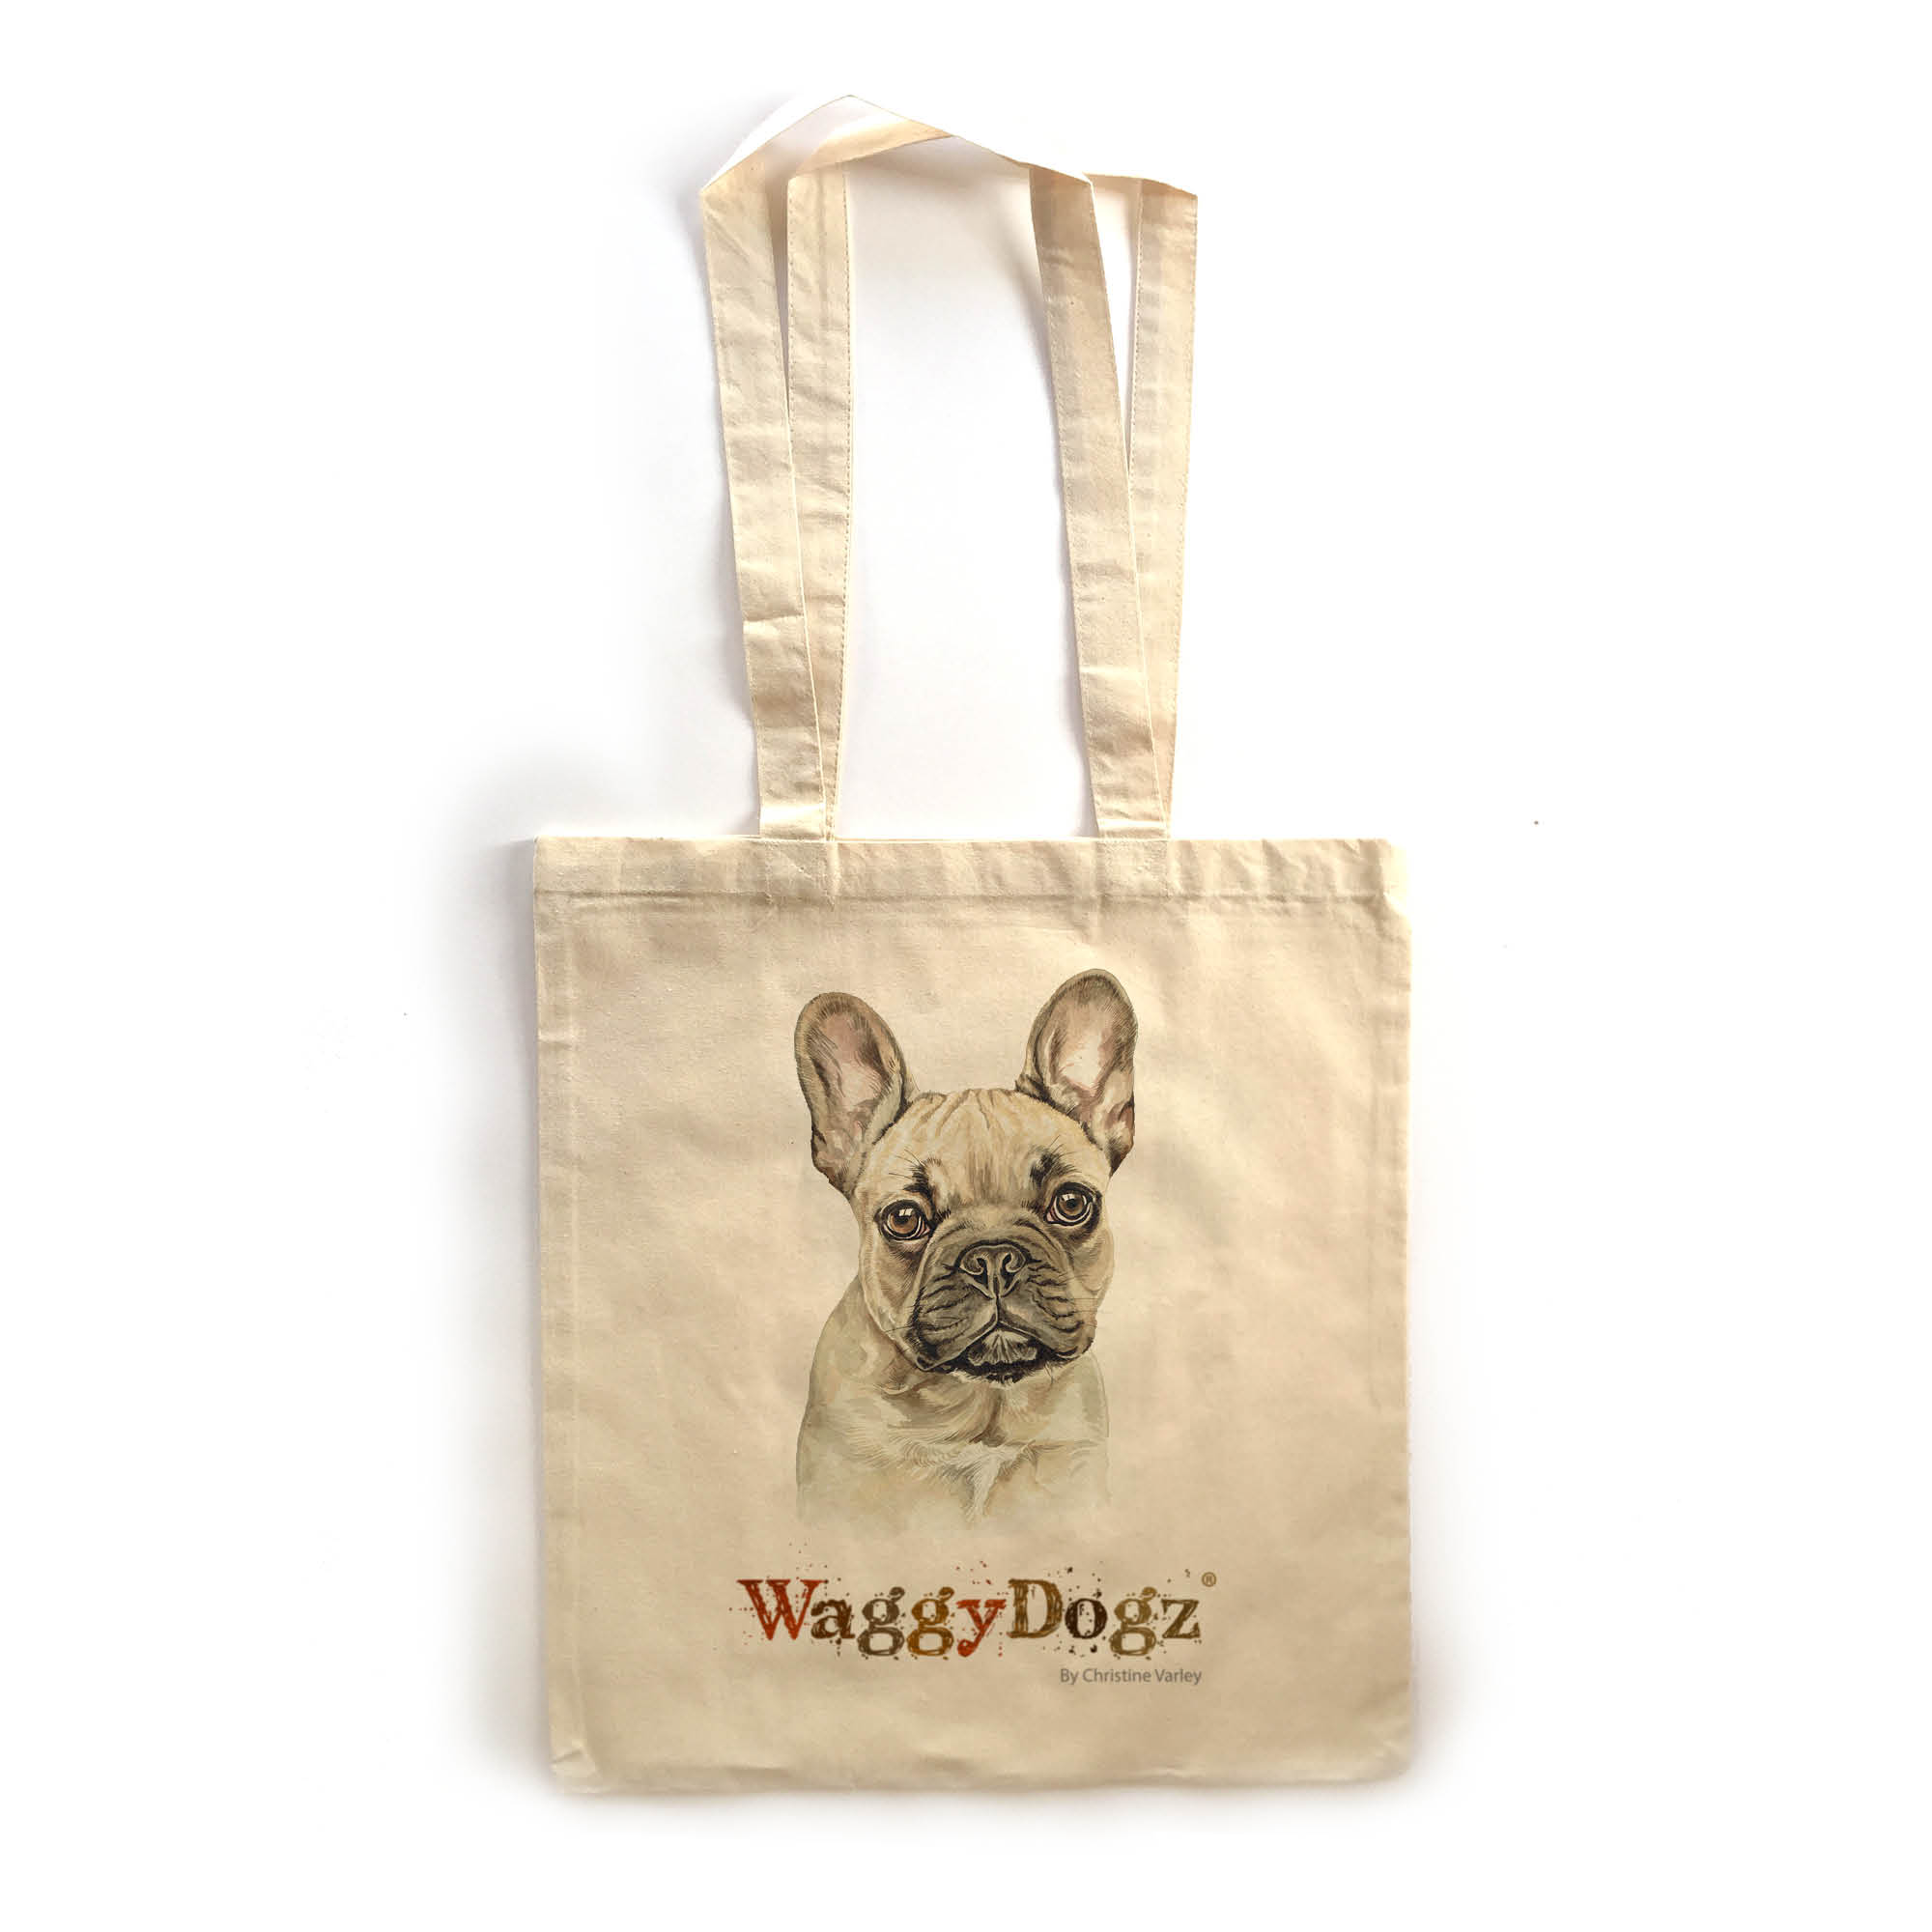 French Bulldog Fawn Dog Tote Bag (TBG-229) - WaggyDogz